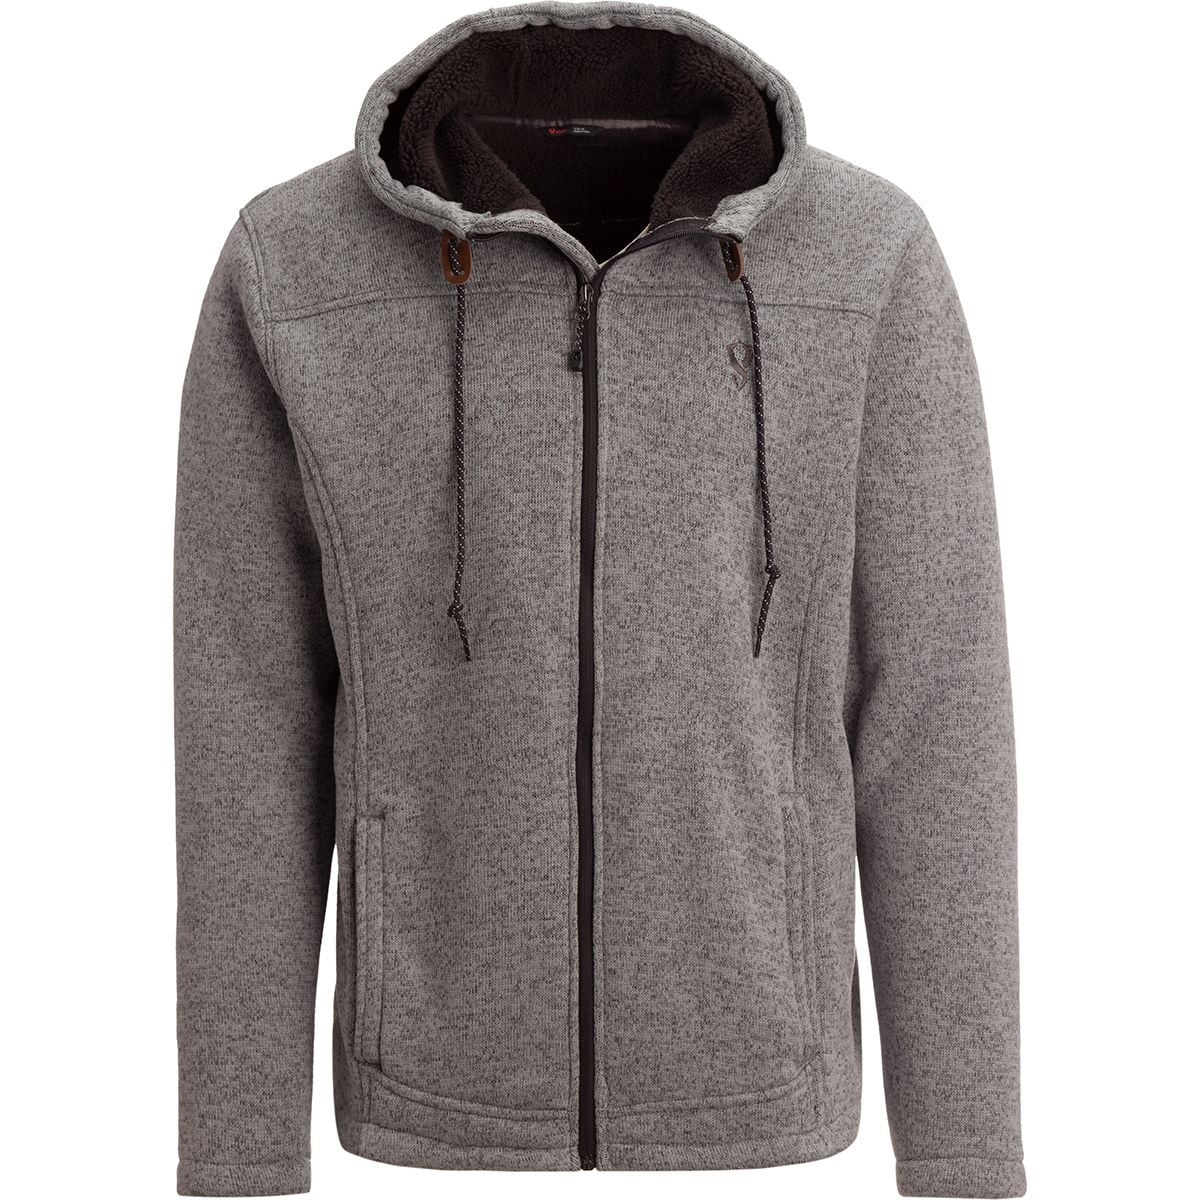 Stoic Sherpa Lined Sweater Fleece Jacket - Men's | Backcountry.com